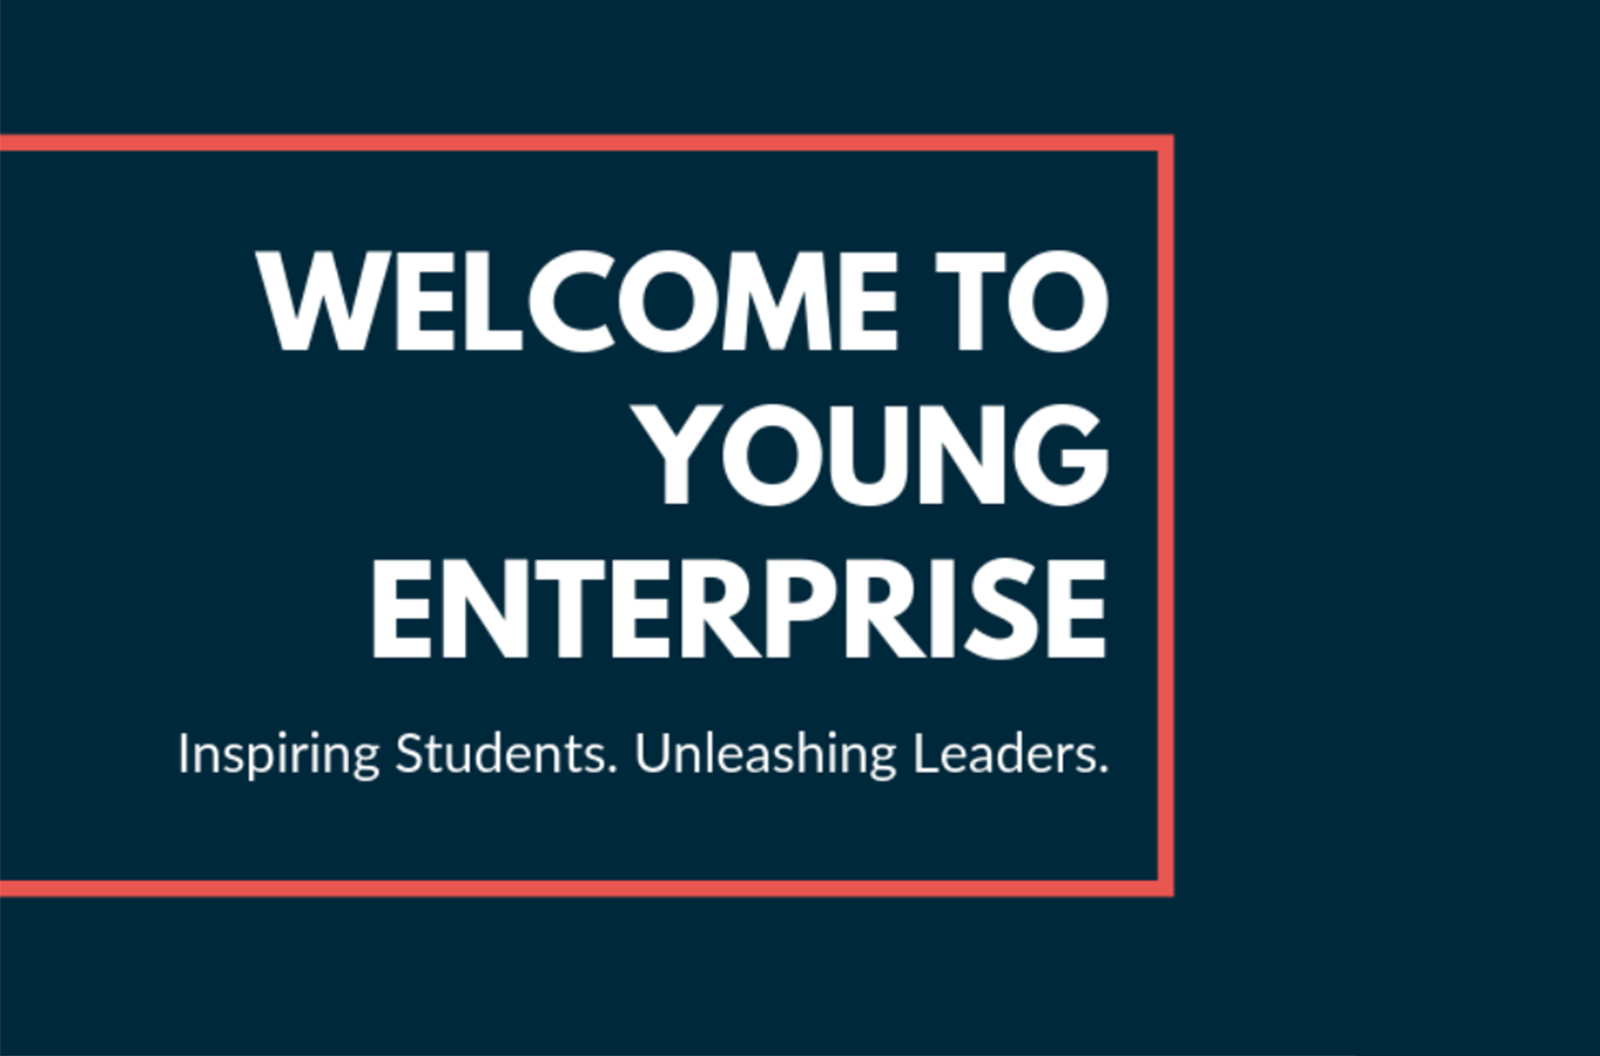 Young Enterprise Scheme (YES) Kickstart